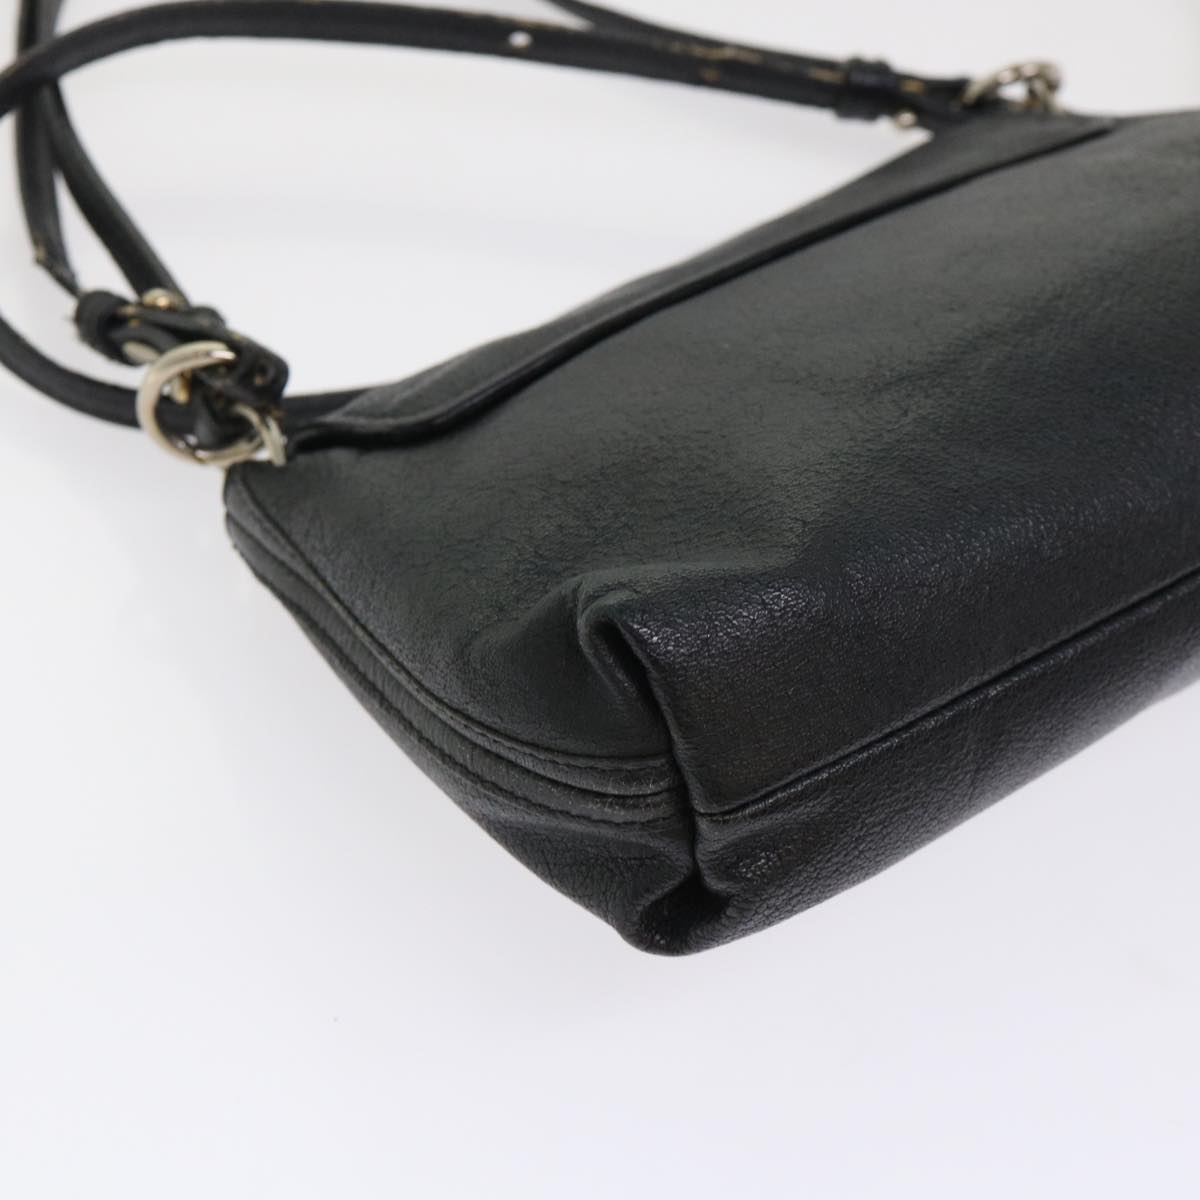 Chloe Shoulder Bag Leather Black Auth bs7243